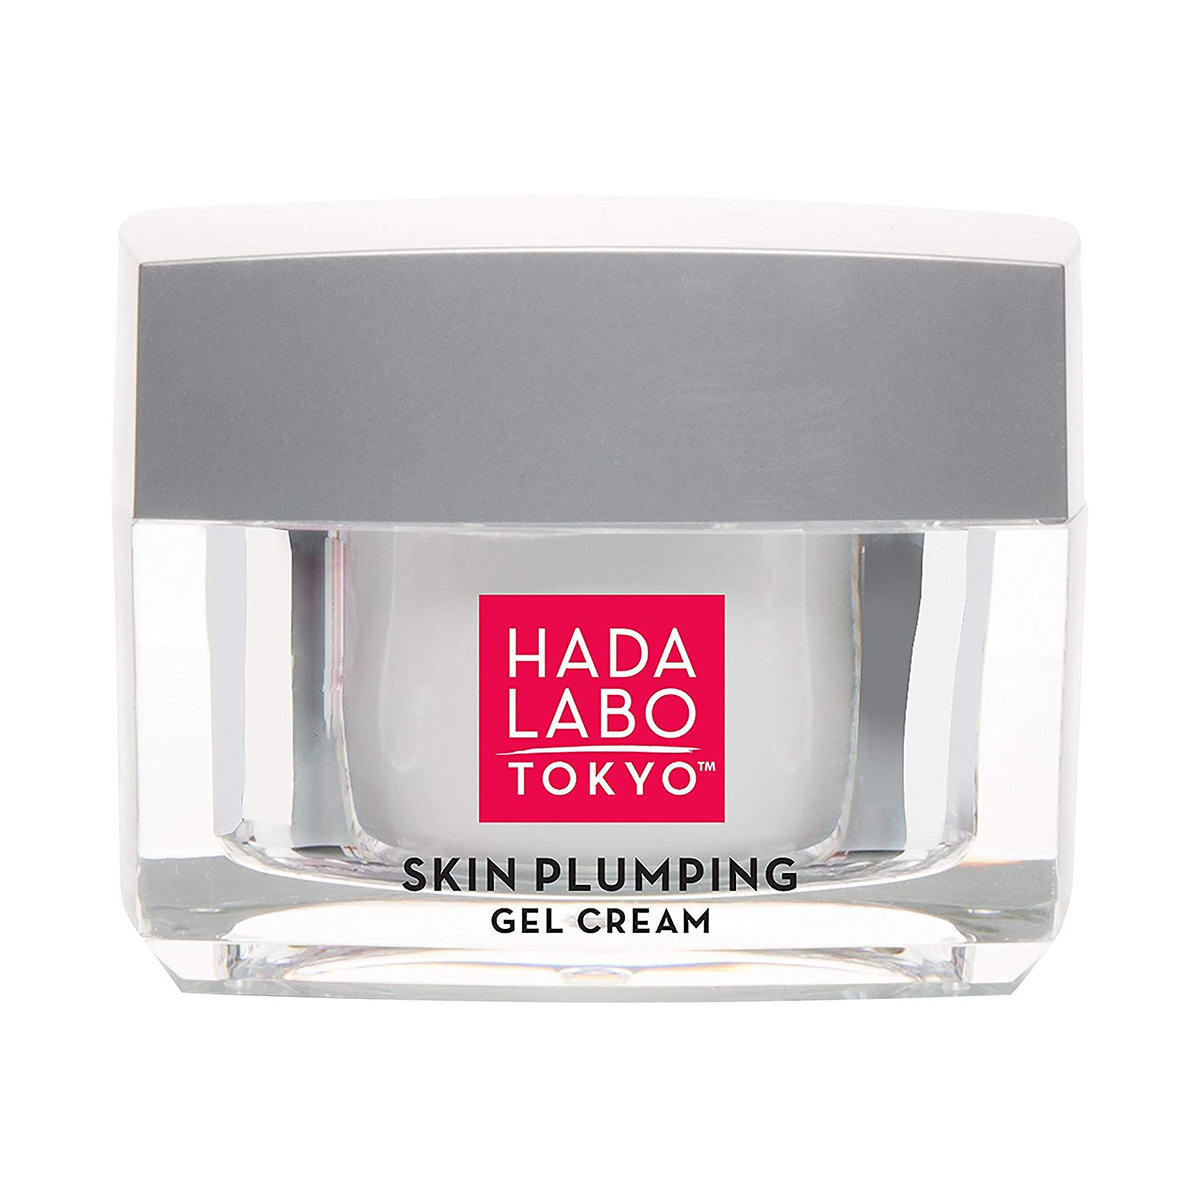  Hada Labo Tokyo Crème Gel Repulpant pour la peau 